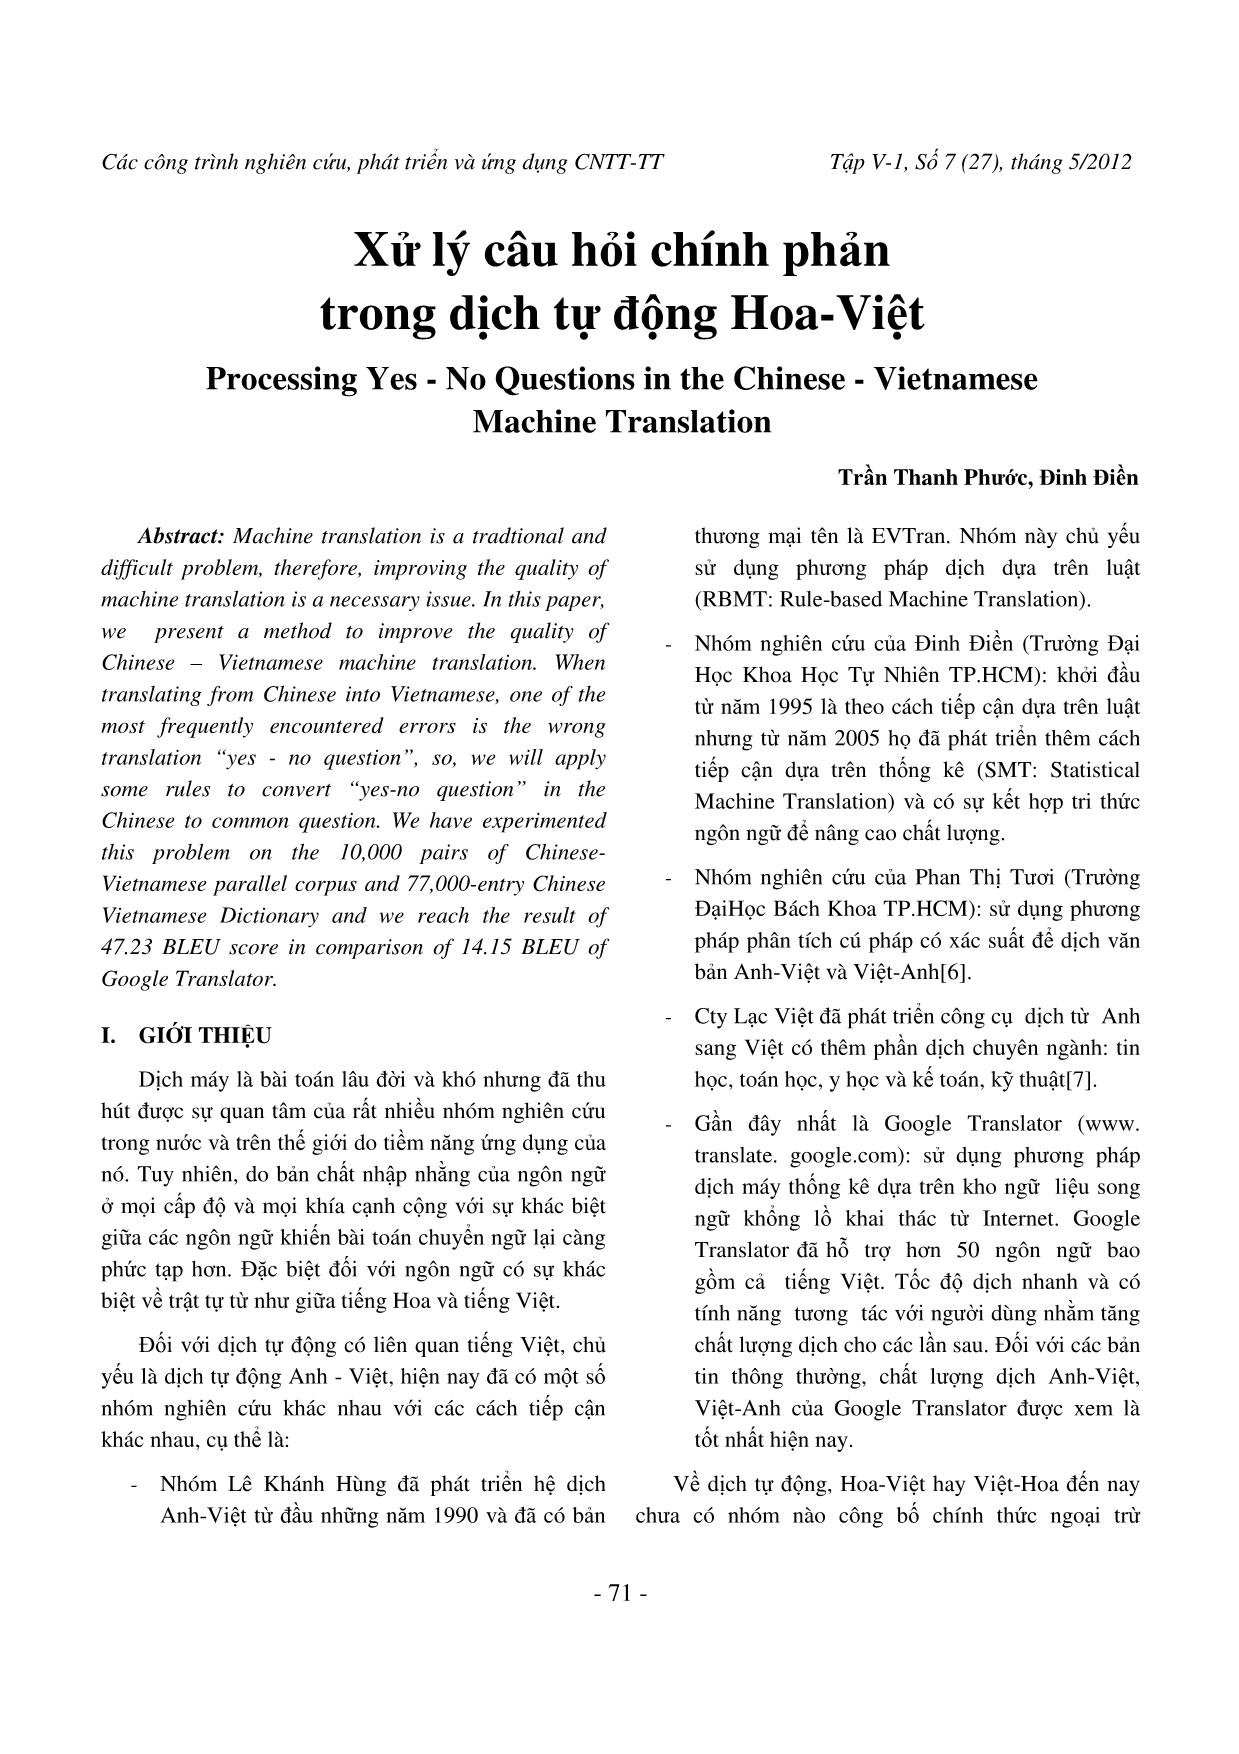 Xử lý câu hỏi chính phản trong dịch tự động Hoa-Việt trang 1